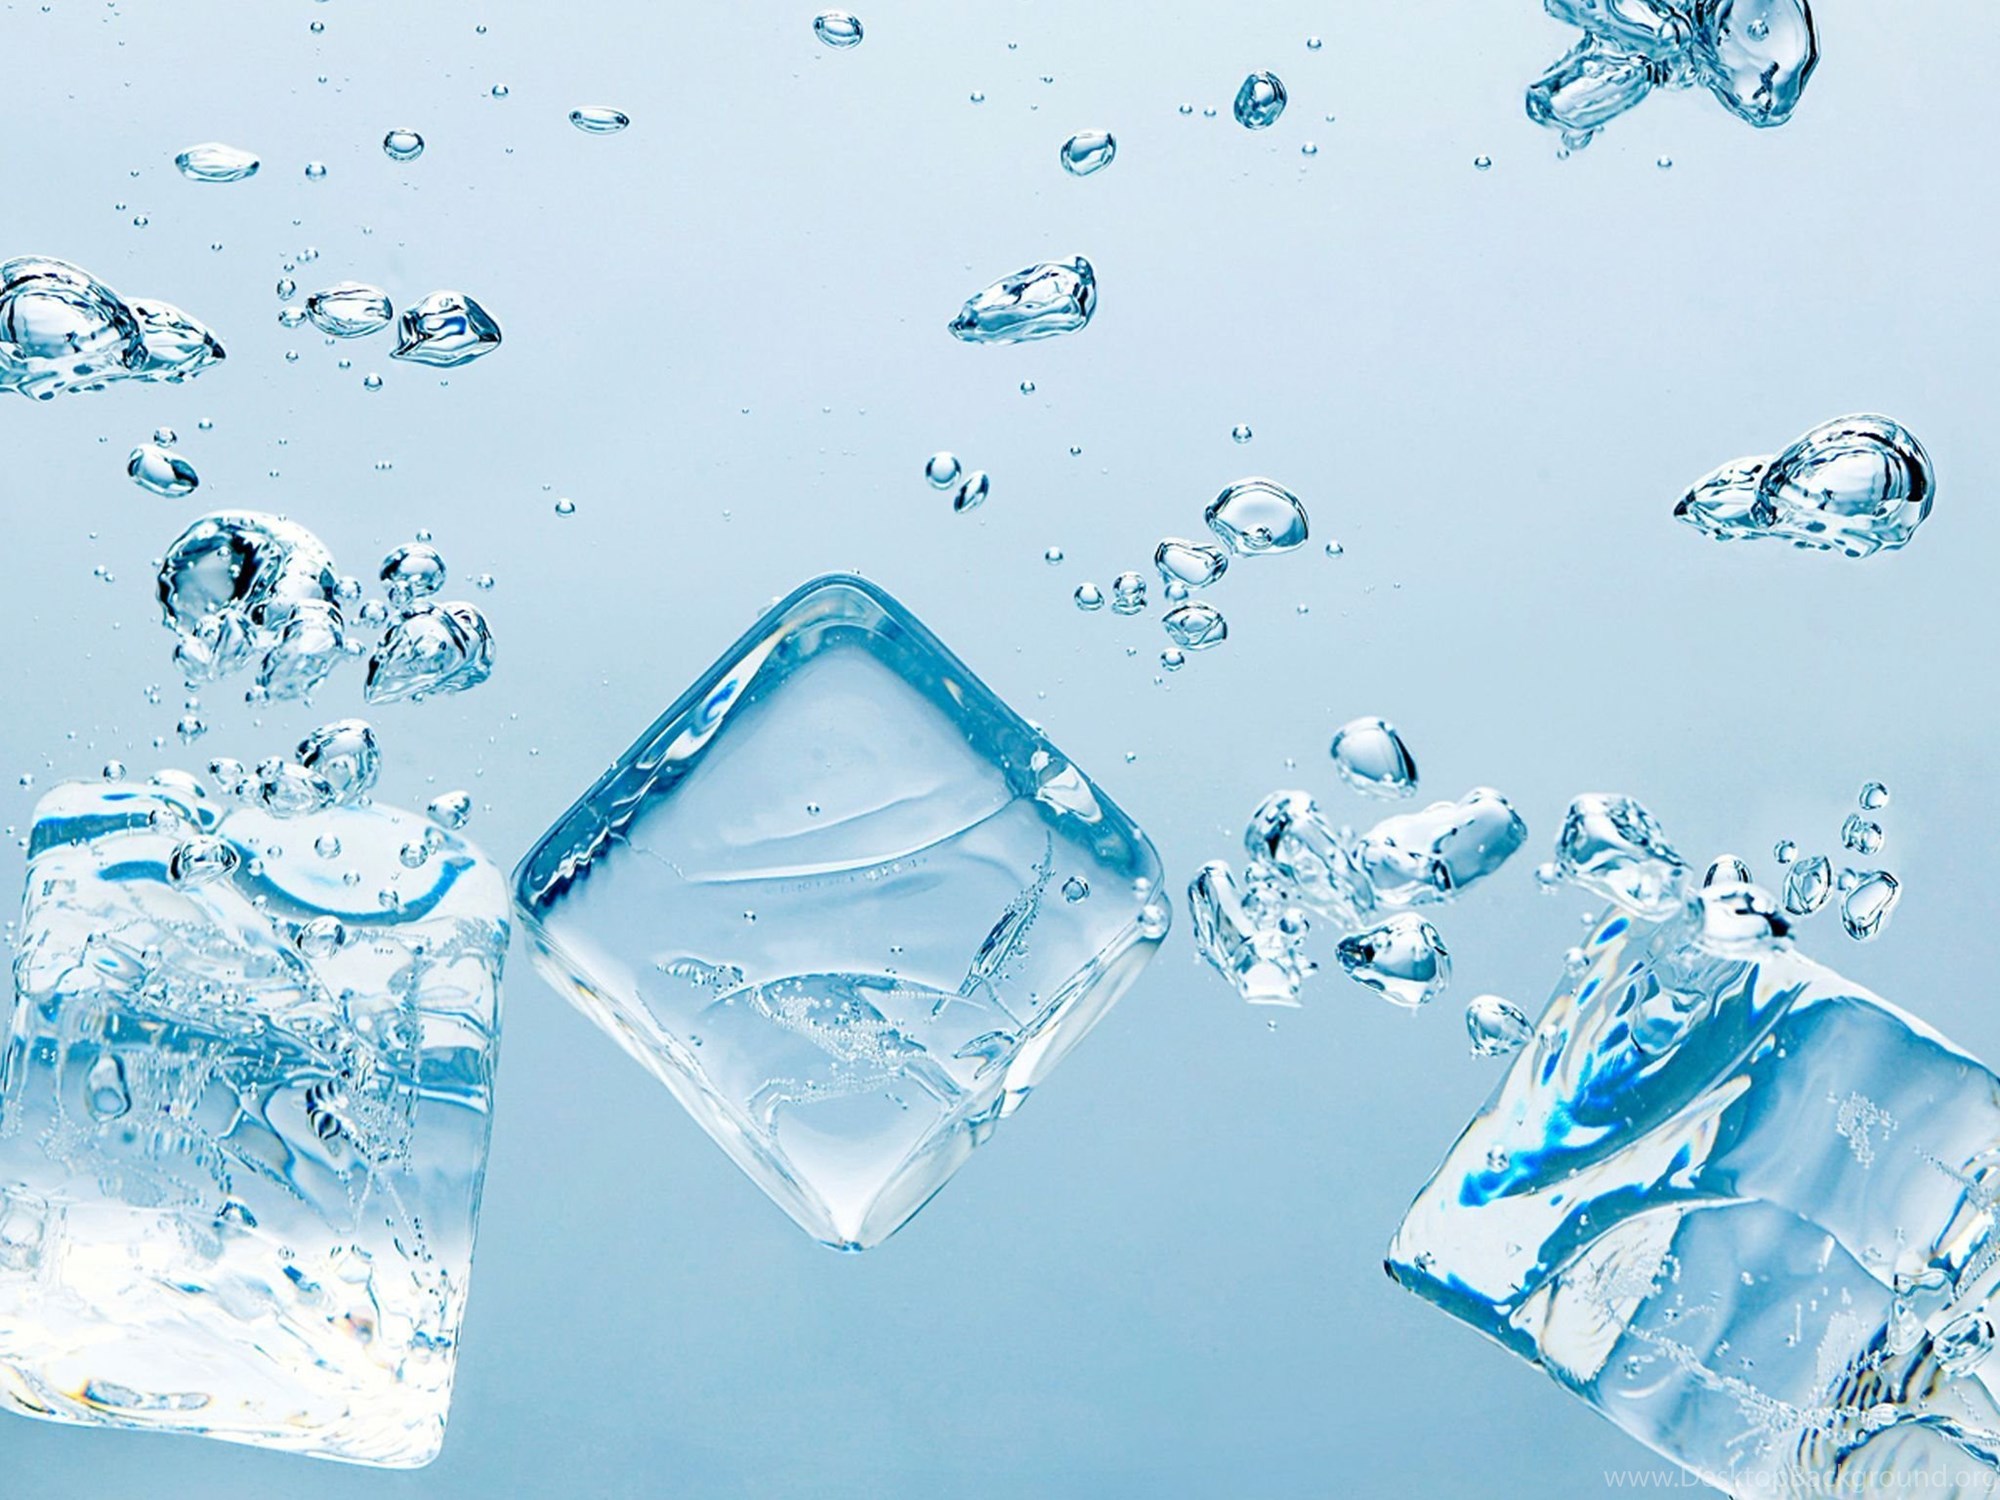 Мелкий лед на воде. Вода со льдом. Кубики льда в воде. Свежесть воды. Стакан воды.